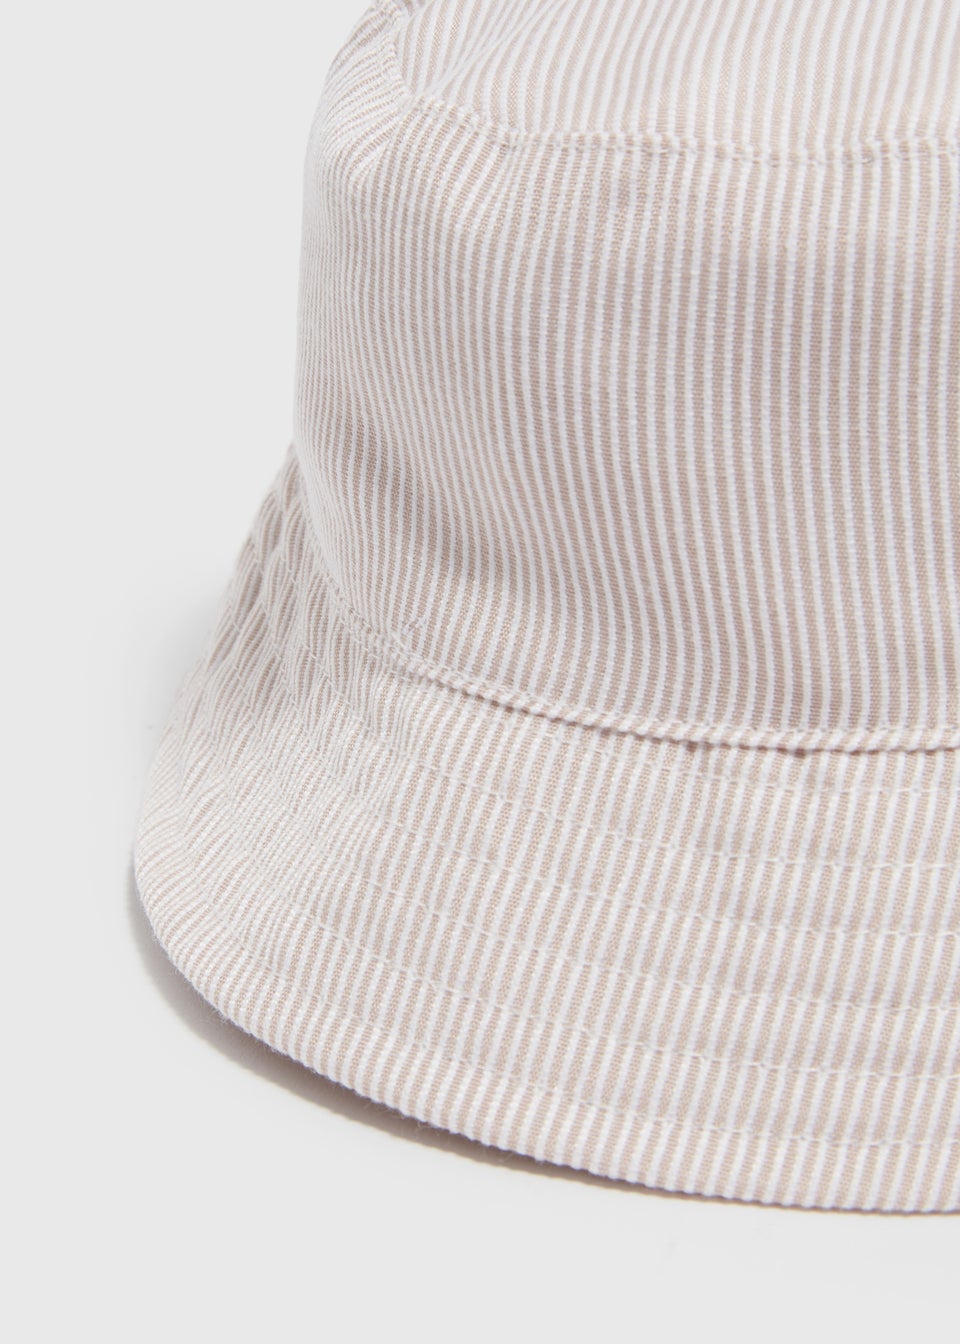 Baby Stone Stripe Bucket Hat (Newborn-24mths)